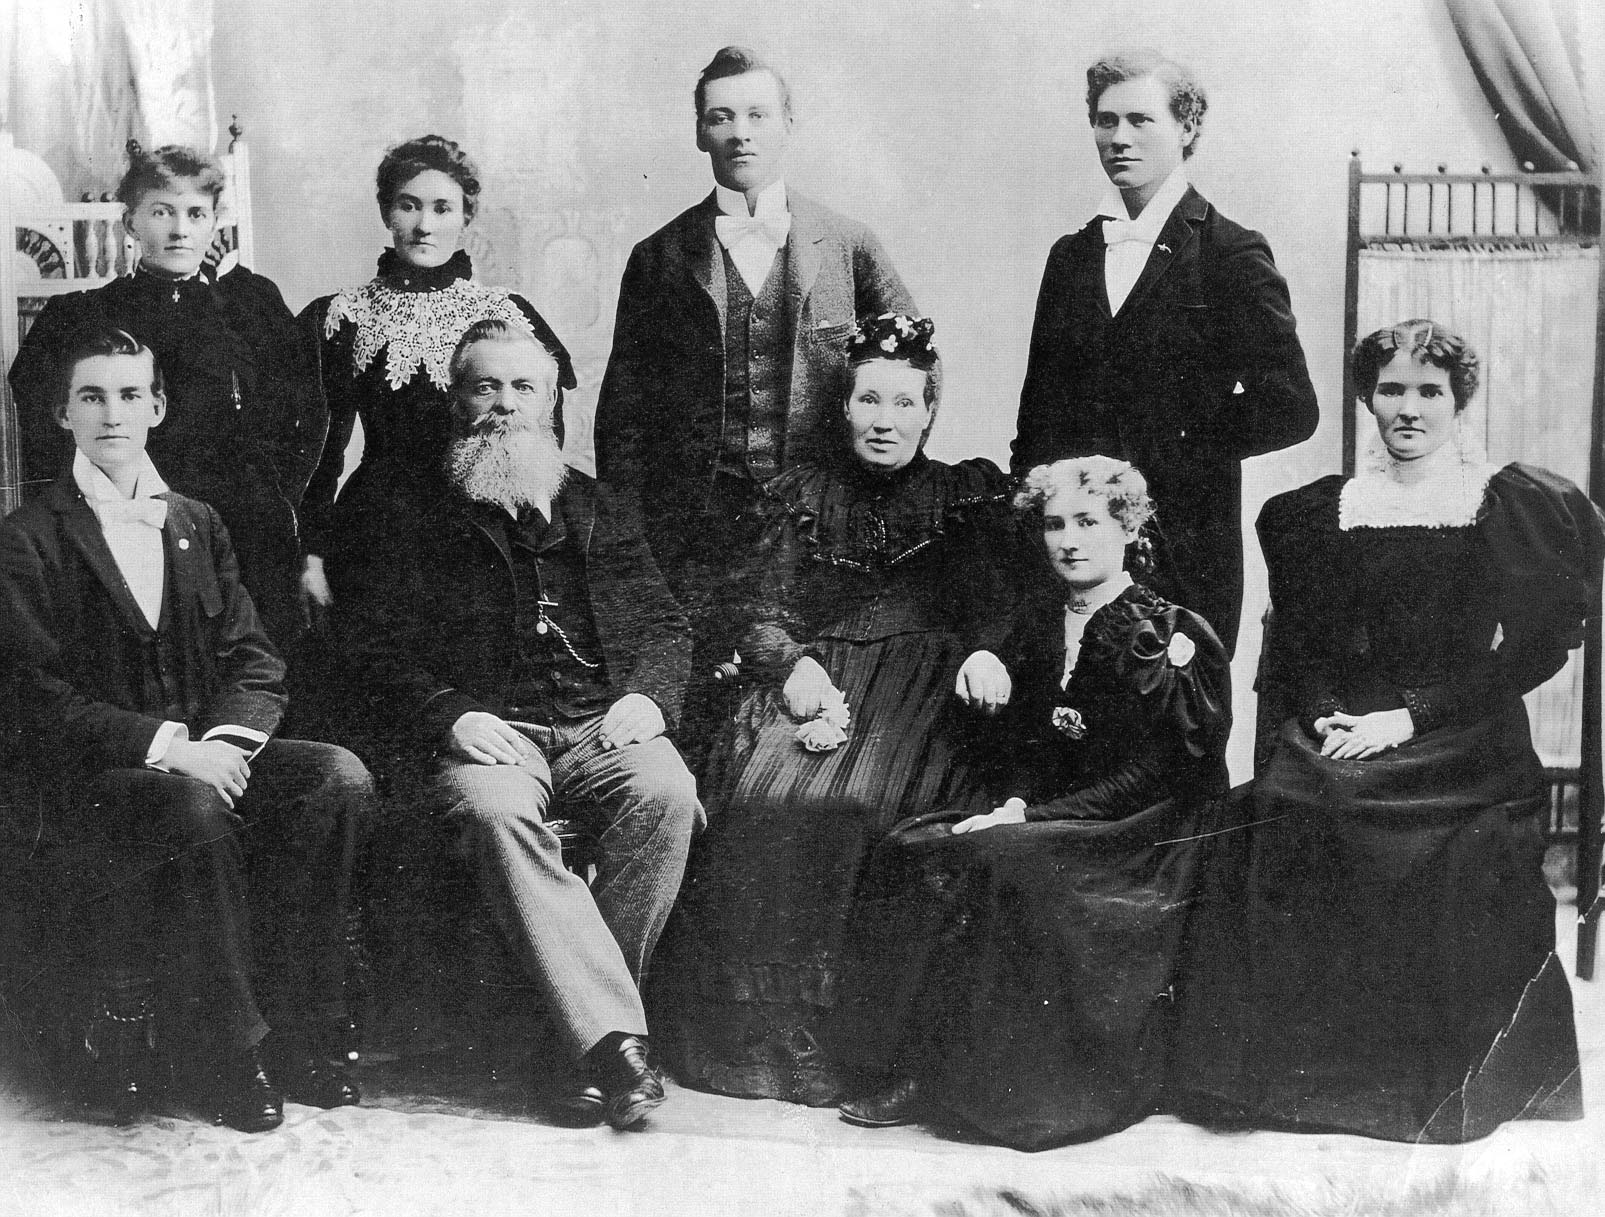 Neuf membres de la famille McConnell posant pour un portrait de famille. Les femmes portent de longues robes à manches bouffantes, les hommes sont en costume, gilet et nœud papillon. 